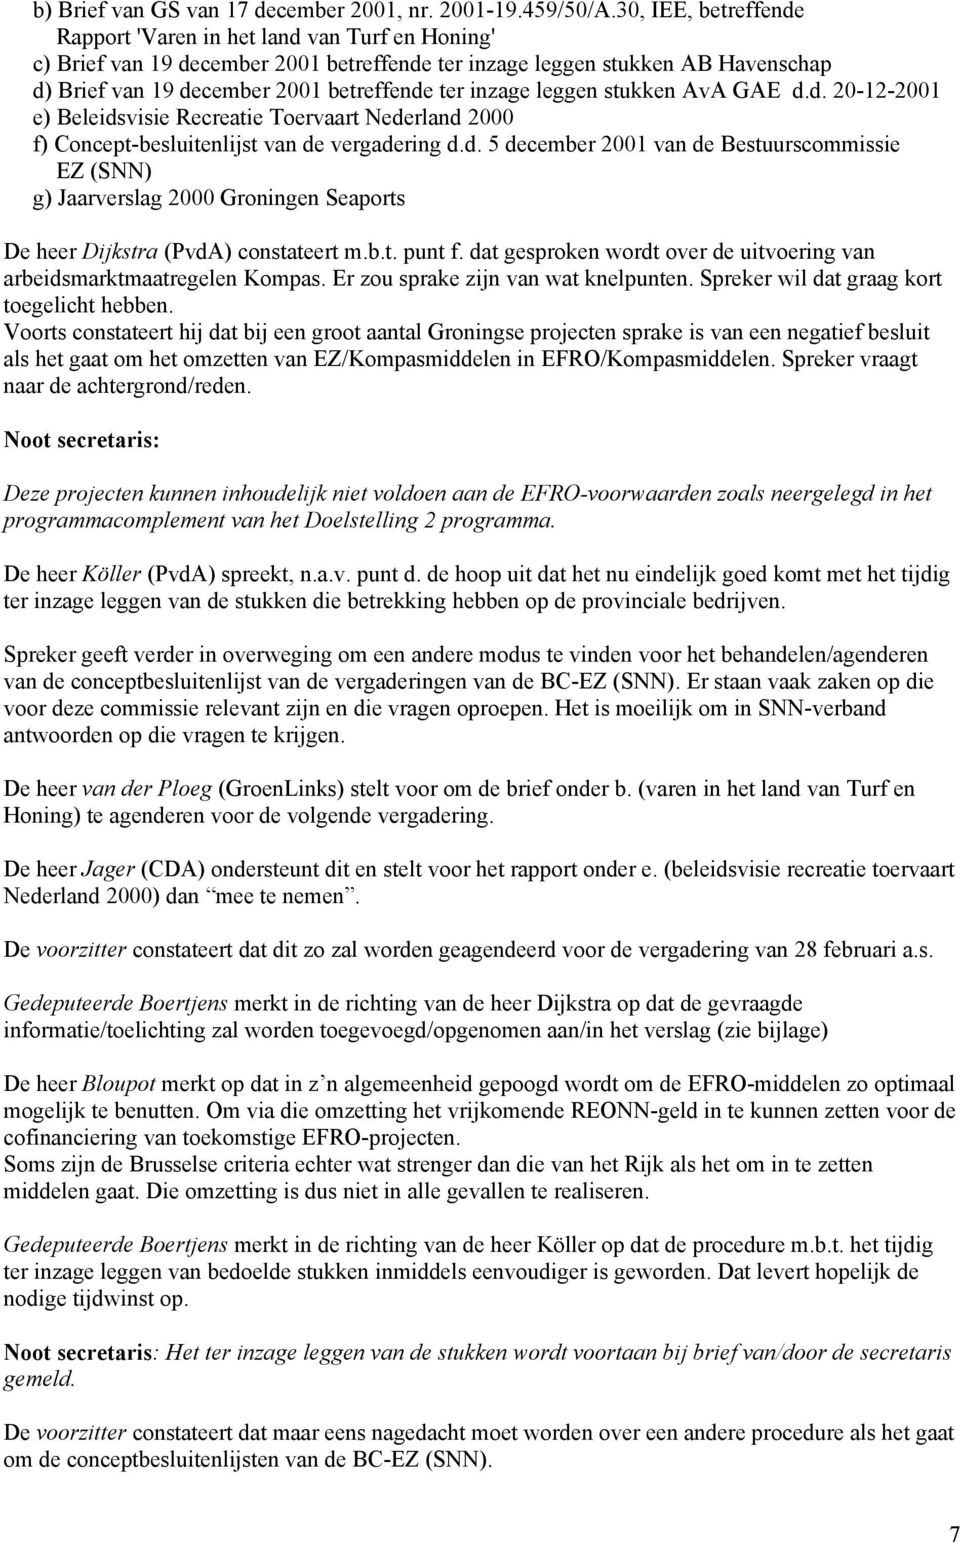 inzage leggen stukken AvA GAE d.d. 20-12-2001 e) Beleidsvisie Recreatie Toervaart Nederland 2000 f) Concept-besluitenlijst van de vergadering d.d. 5 december 2001 van de Bestuurscommissie EZ (SNN) g) Jaarverslag 2000 Groningen Seaports De heer Dijkstra (PvdA) constateert m.